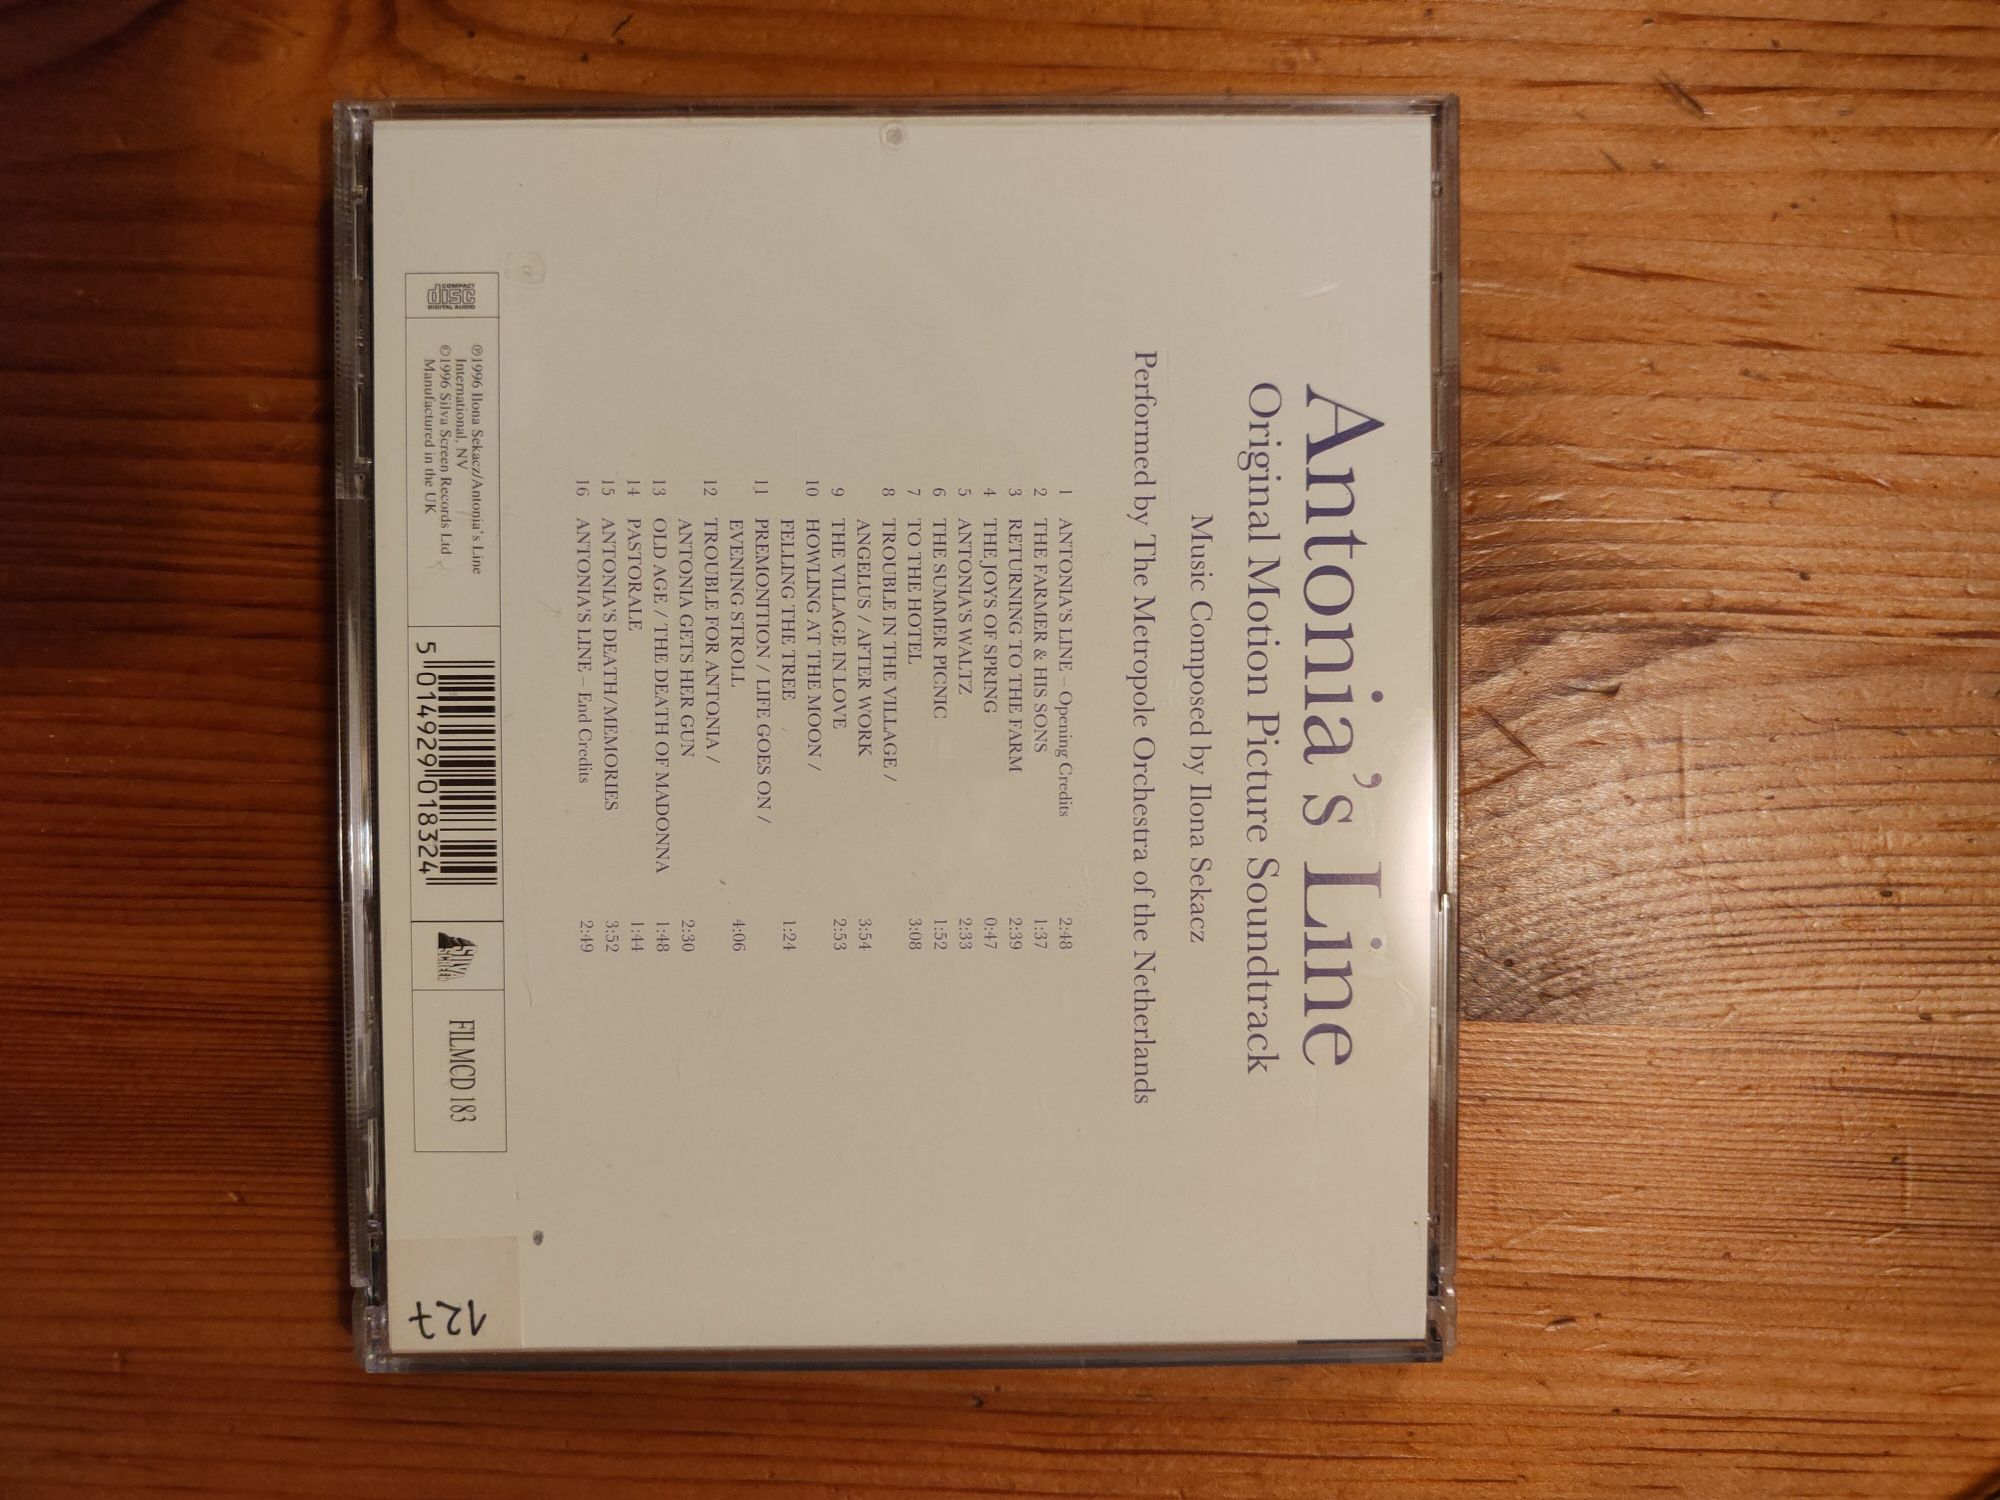 Antonia's Line Soundtrack CD